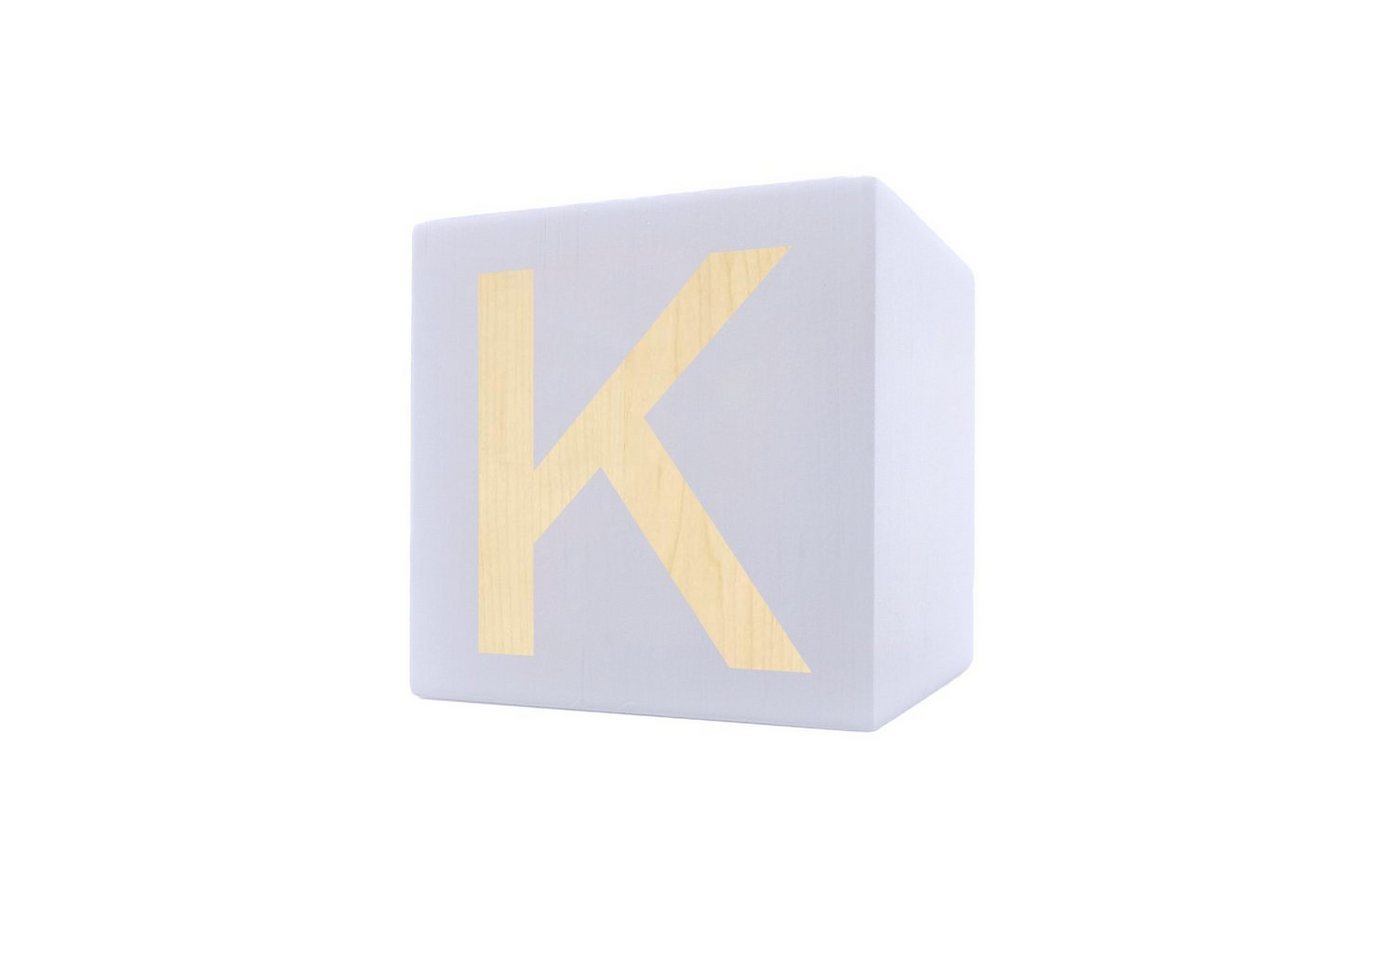 Kopper-24 Deko-Buchstaben Holzbuchstabe Würfel, 5 x 5 cm, weiß, Buchstabe K von Kopper-24